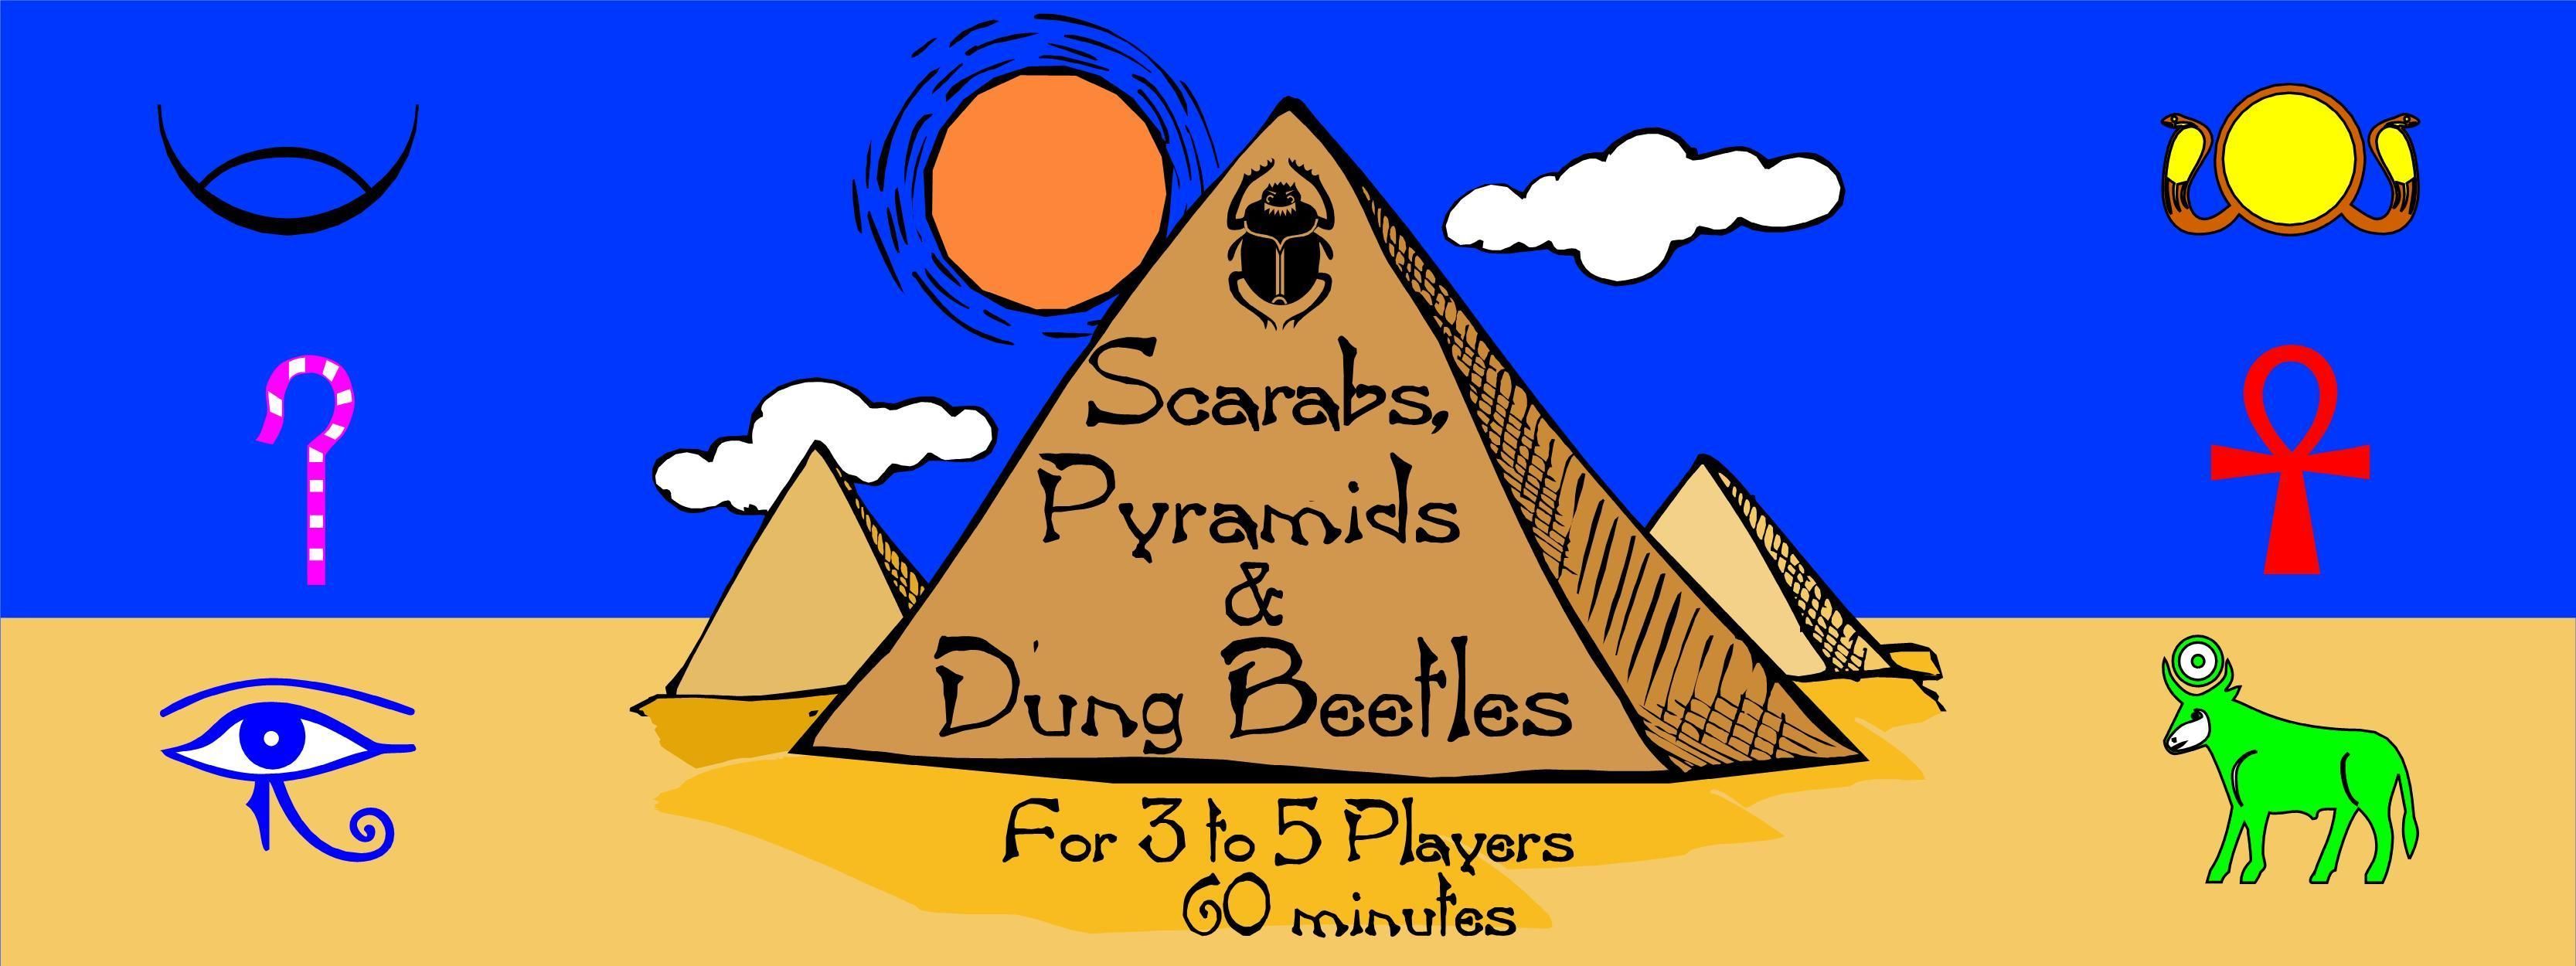 Scarabs, Pyramids & Dung Beetles